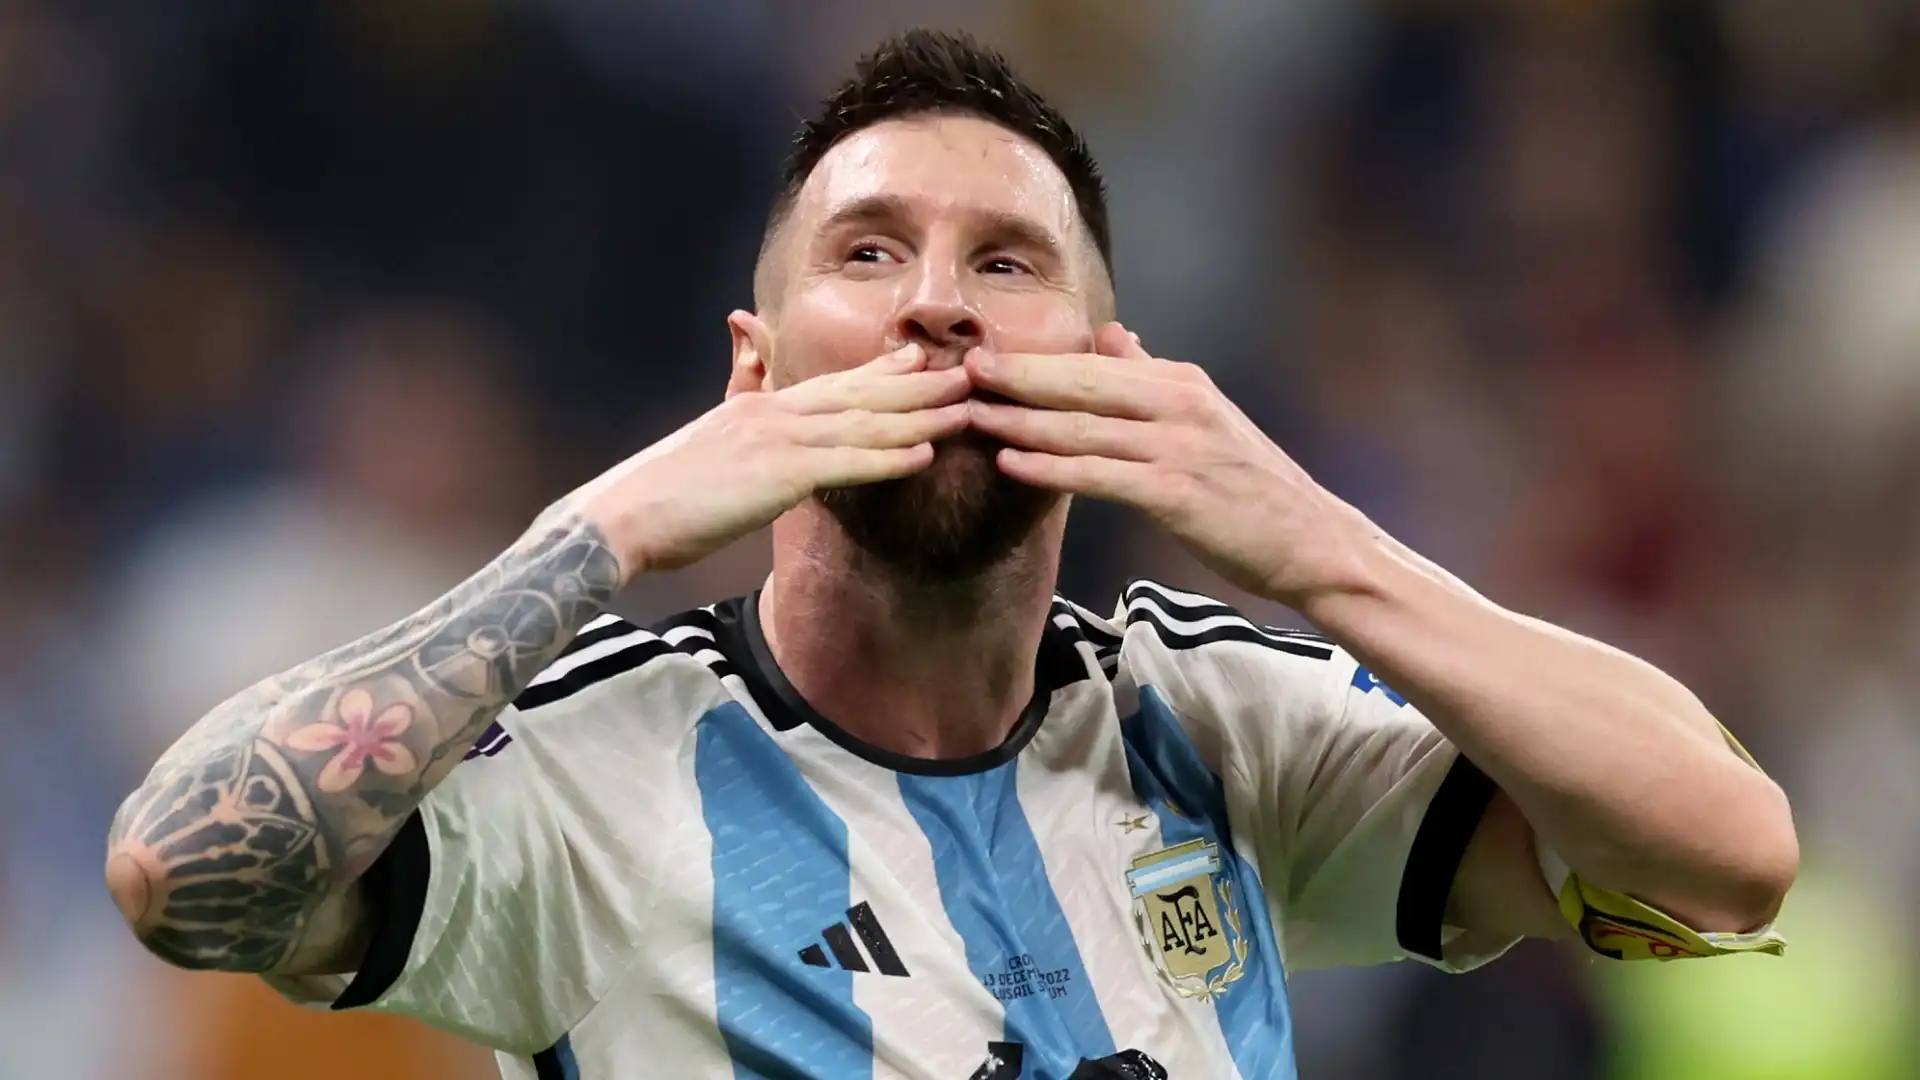 2022: Lionel Messi (calcio), guadagni totali stimati 130 milioni di euro